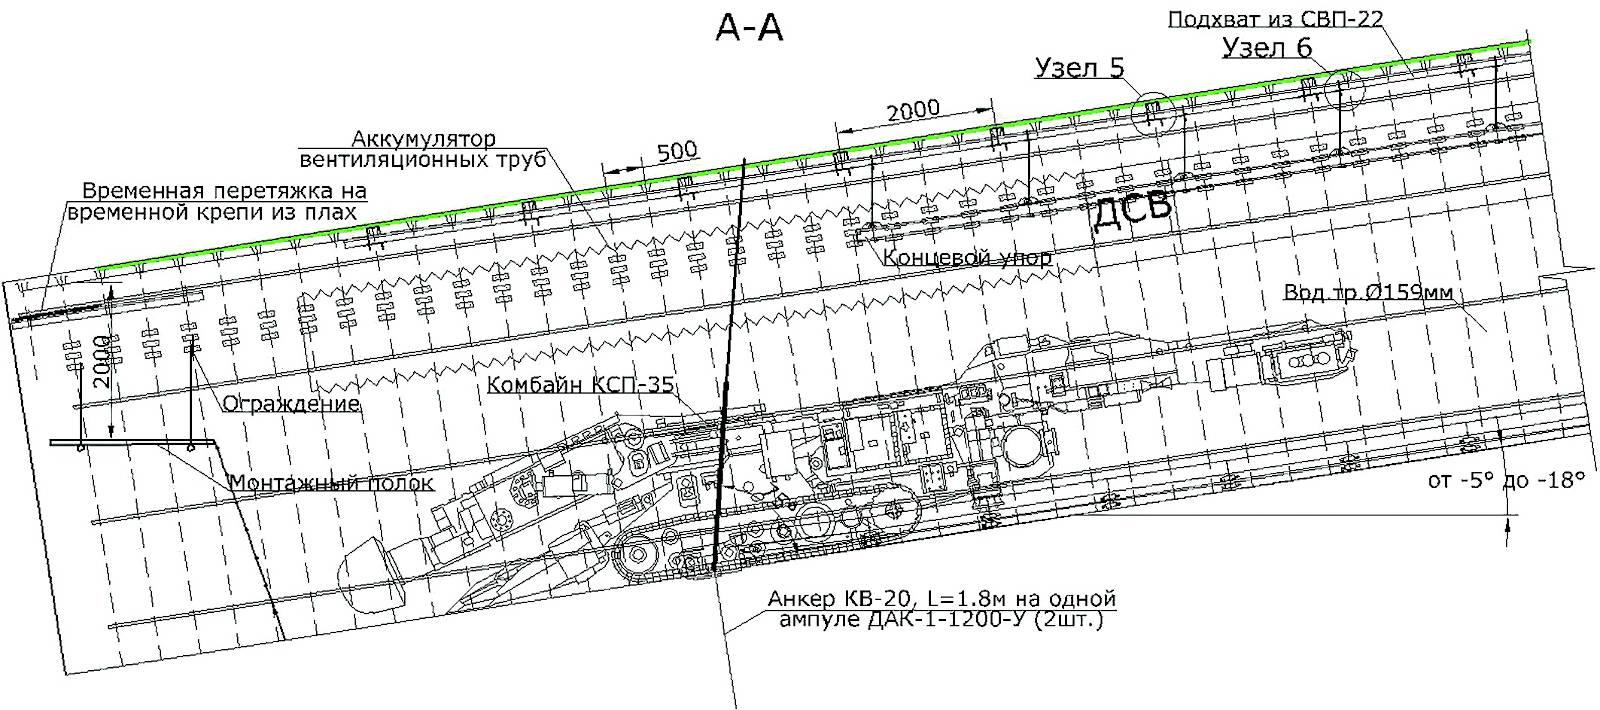 Рис. 2 Южный наклонный конвейерный ствол. Вид сбоку Fig. 2 Side view of the Southern inclined conveyor shaft